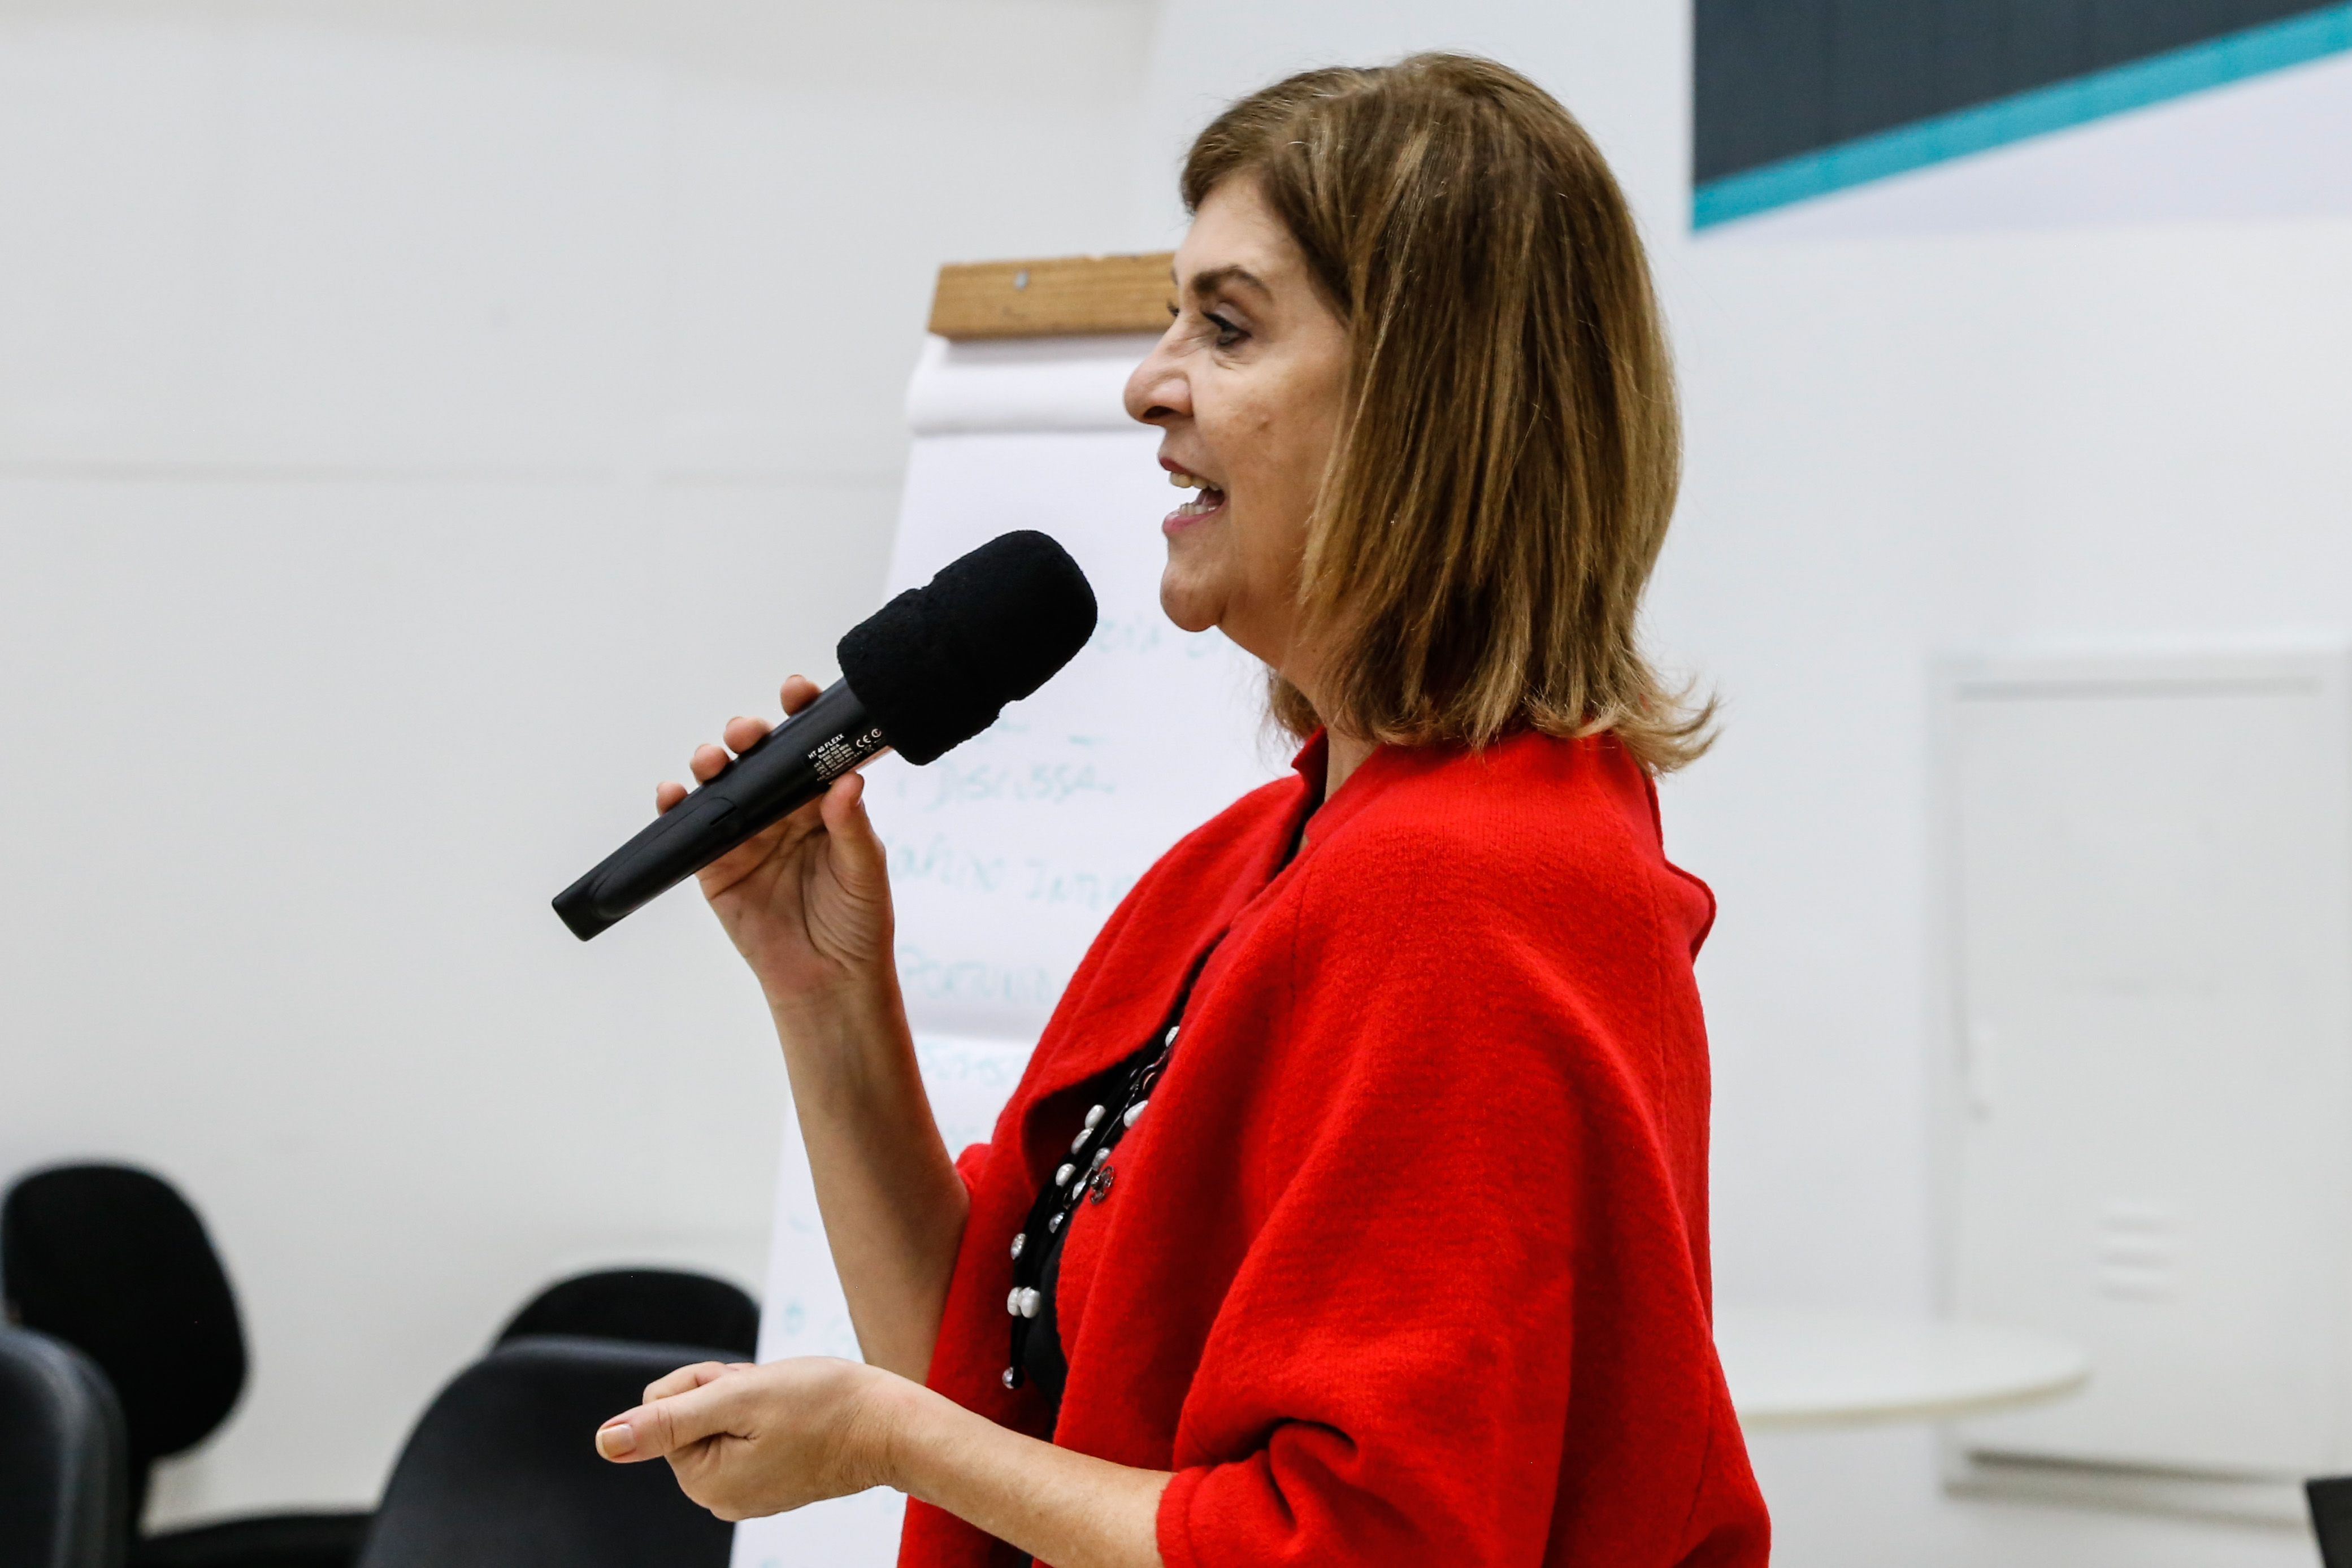 #Paracegover Na imagem: a coordenadora de Gestão de Pessoas da Secretaria Municipal de Saúde, Jane Abraão Marinho, está com um microfone na mão dando as boas vindas na abertura do evento